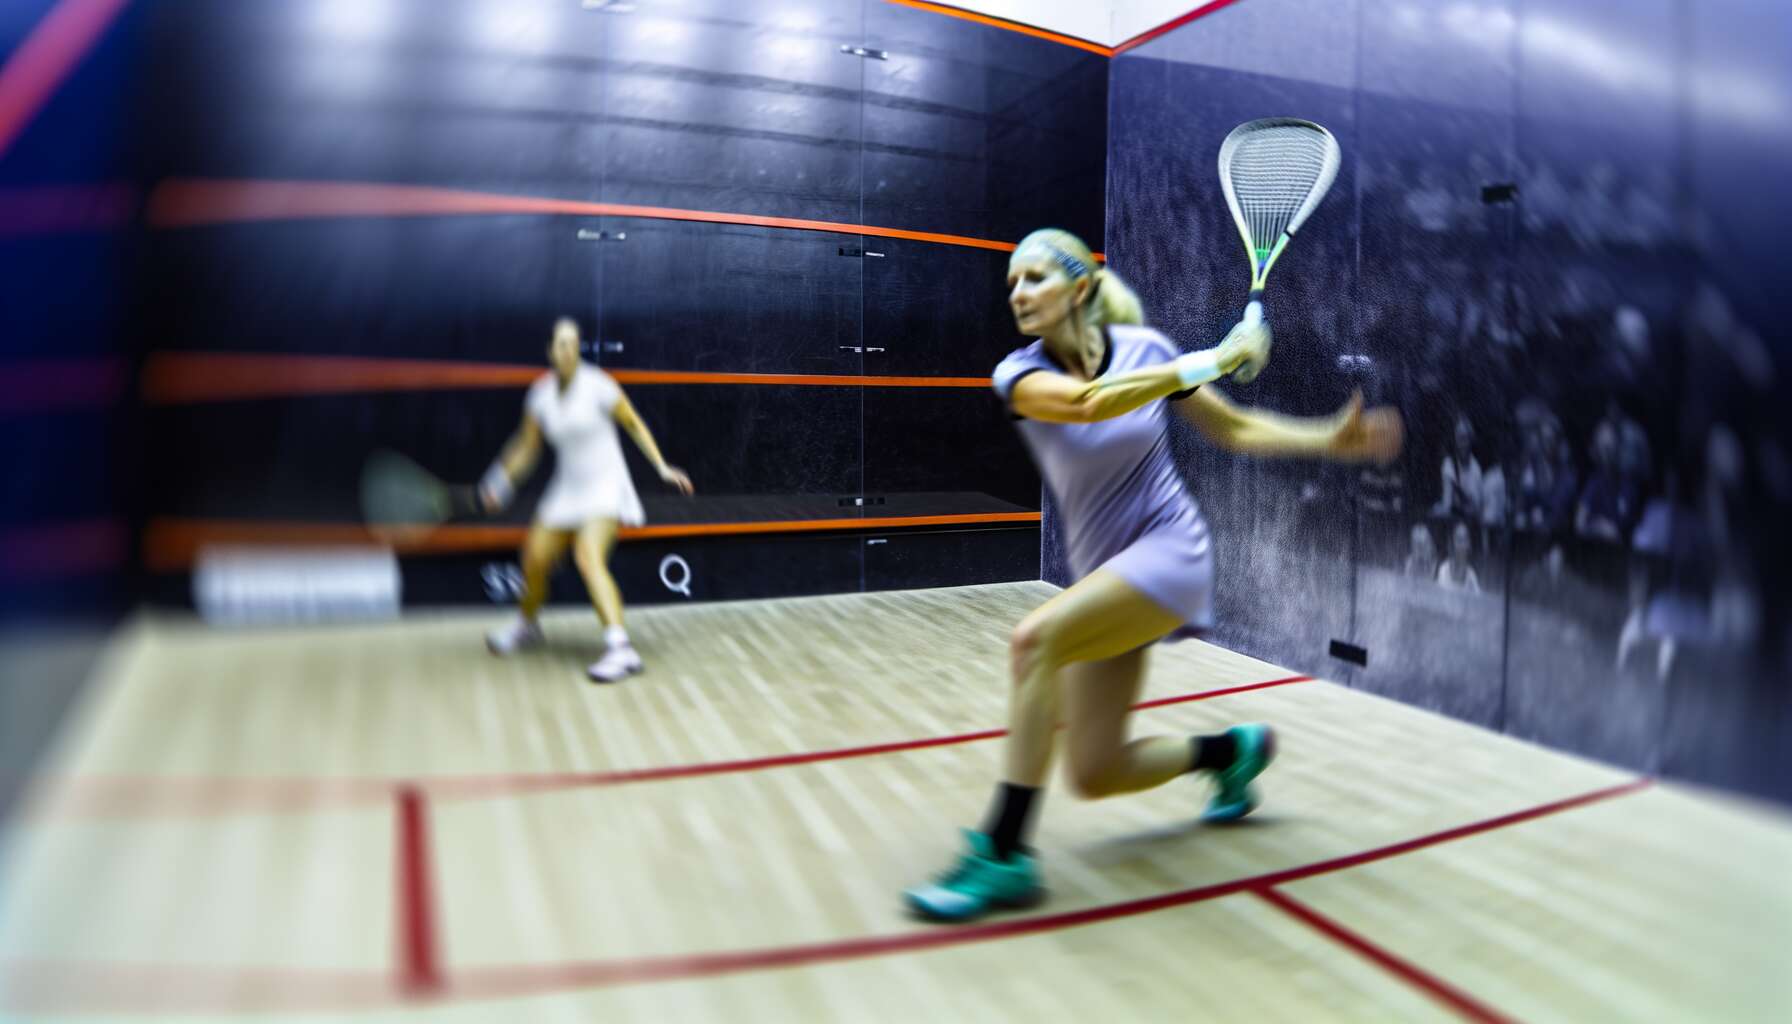 Prise en main facile : les meilleures options pour débutants au squash